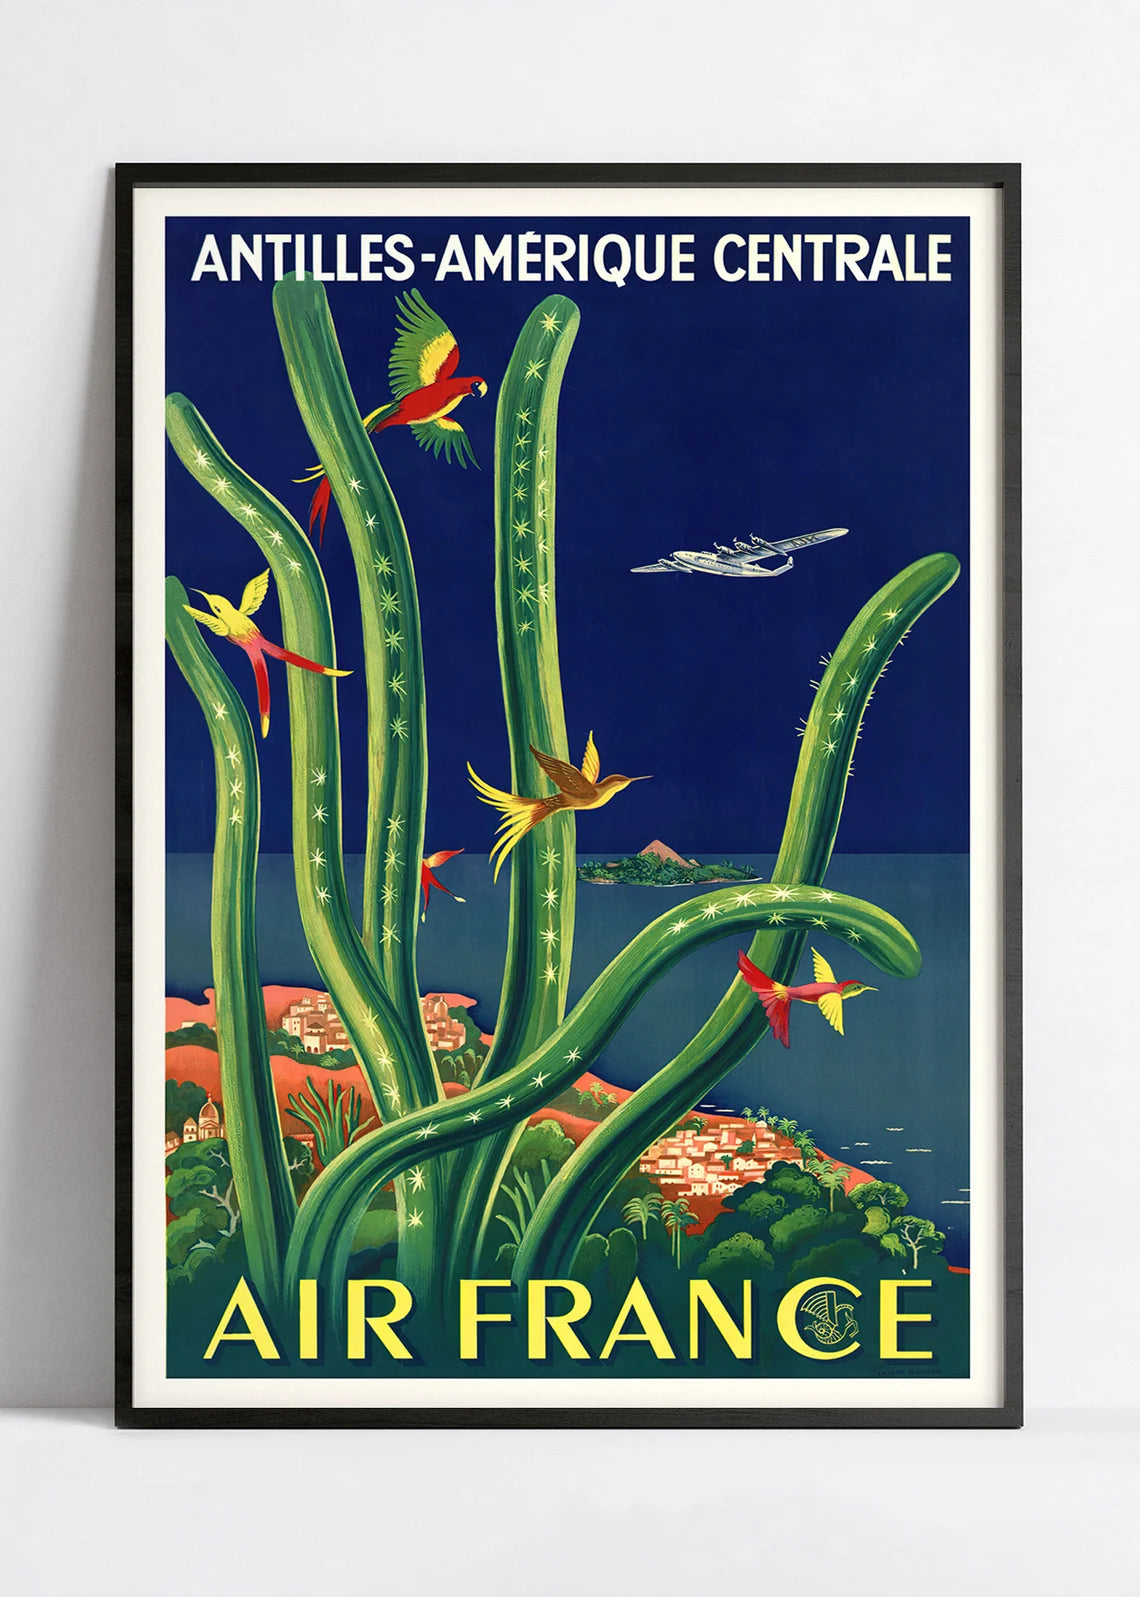 Affiche Air France "Antilles - Amérique centrale" - Lucien Boucher - Haute Définition - papier mat 230gr/m2